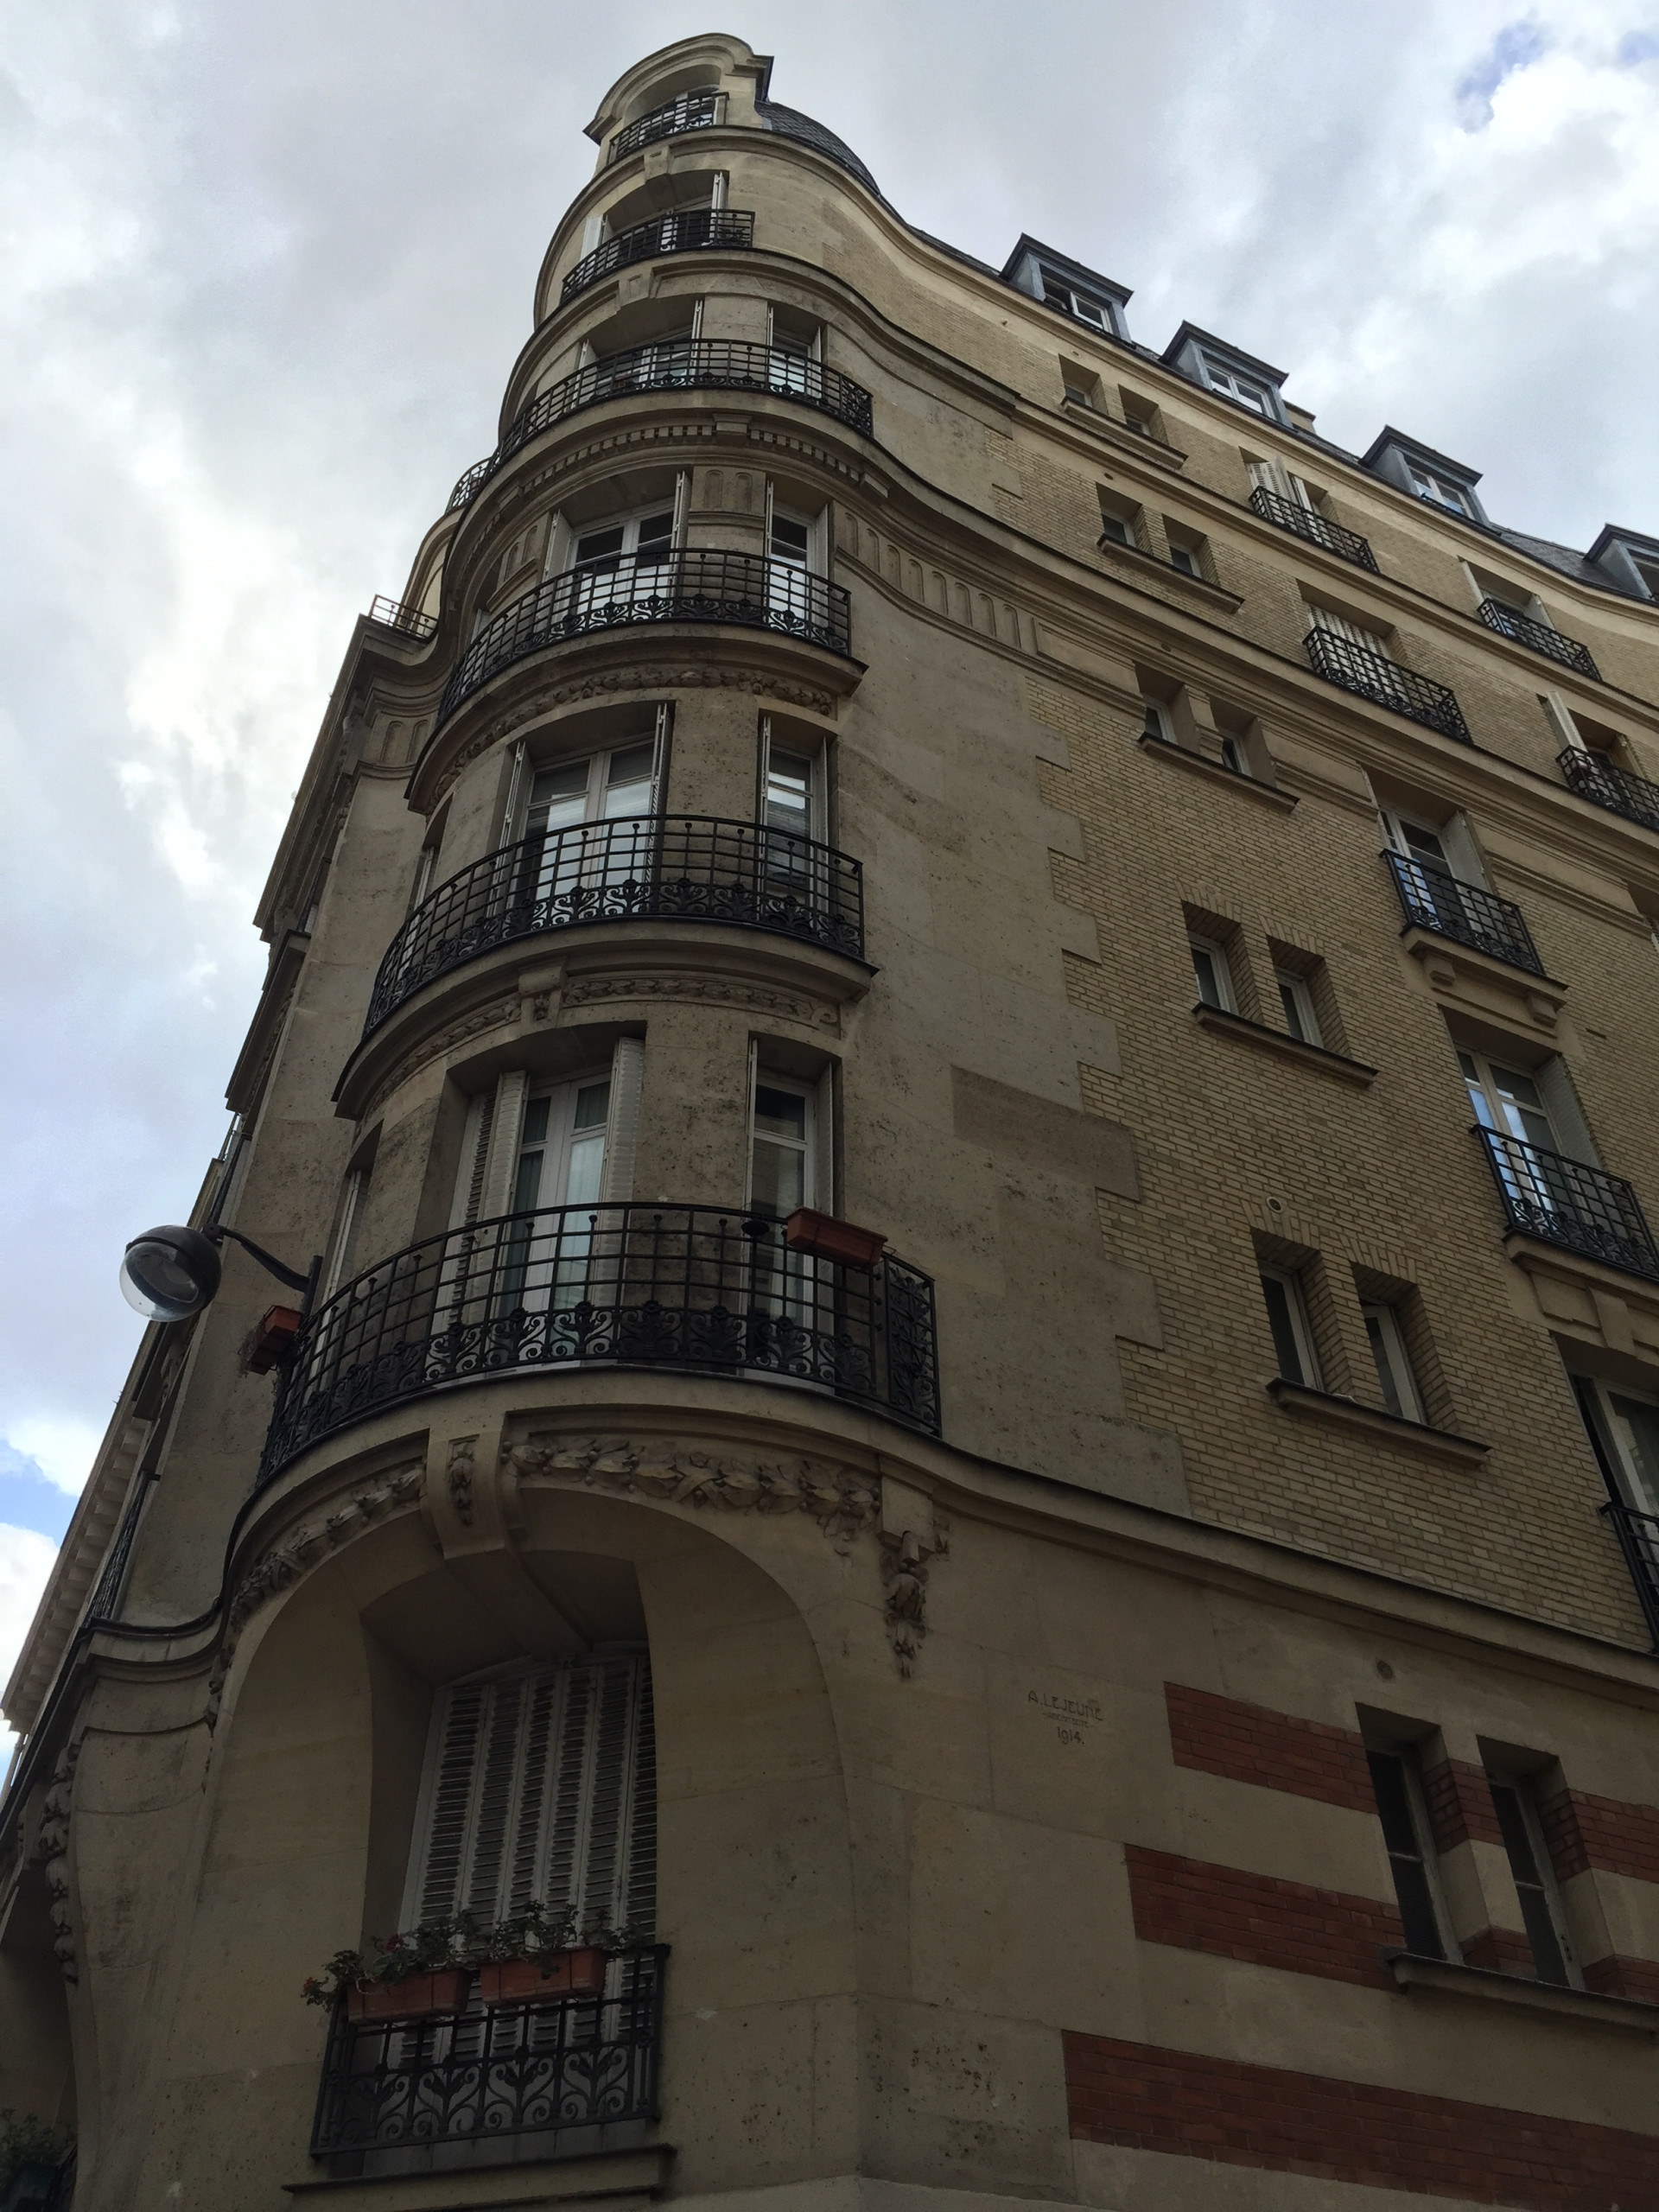 Appartement parisien pour louer en colocation